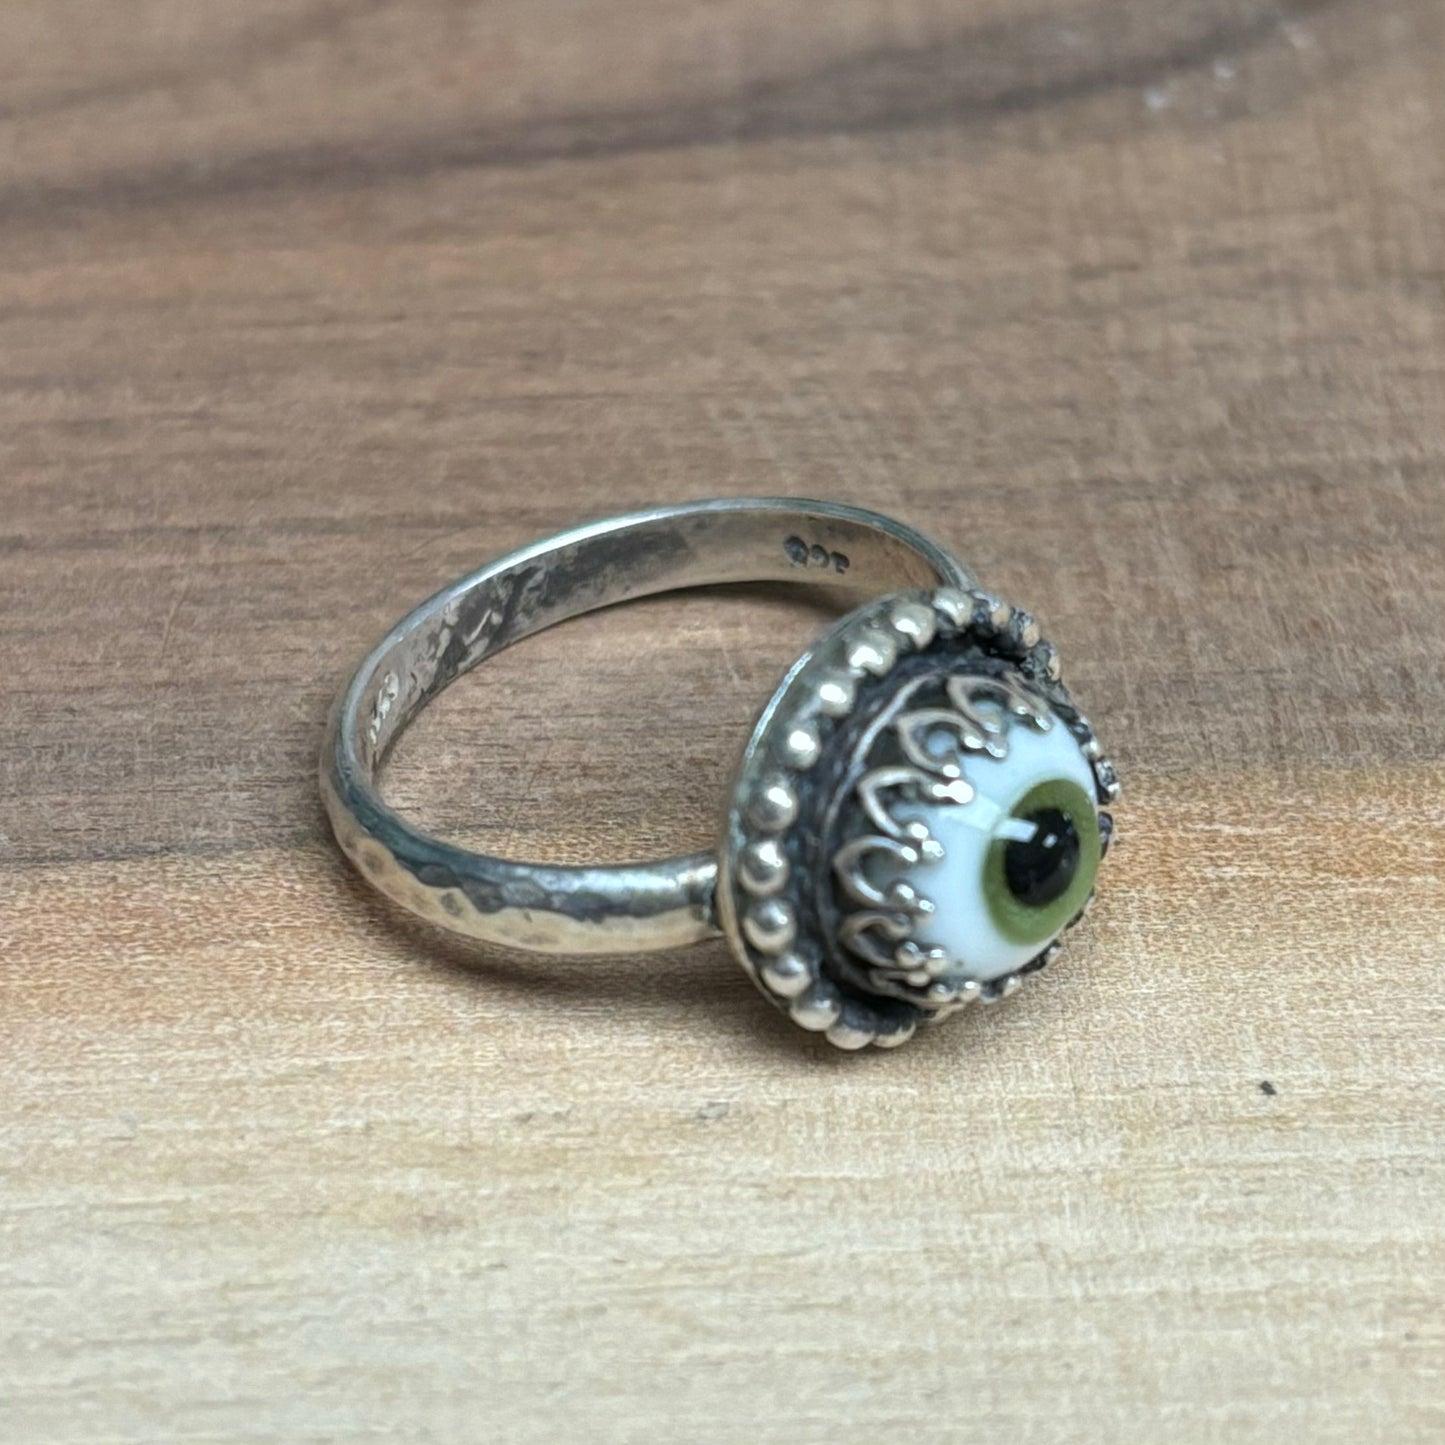 Handmade Sterling Silver + Glass Eye Ring - Green